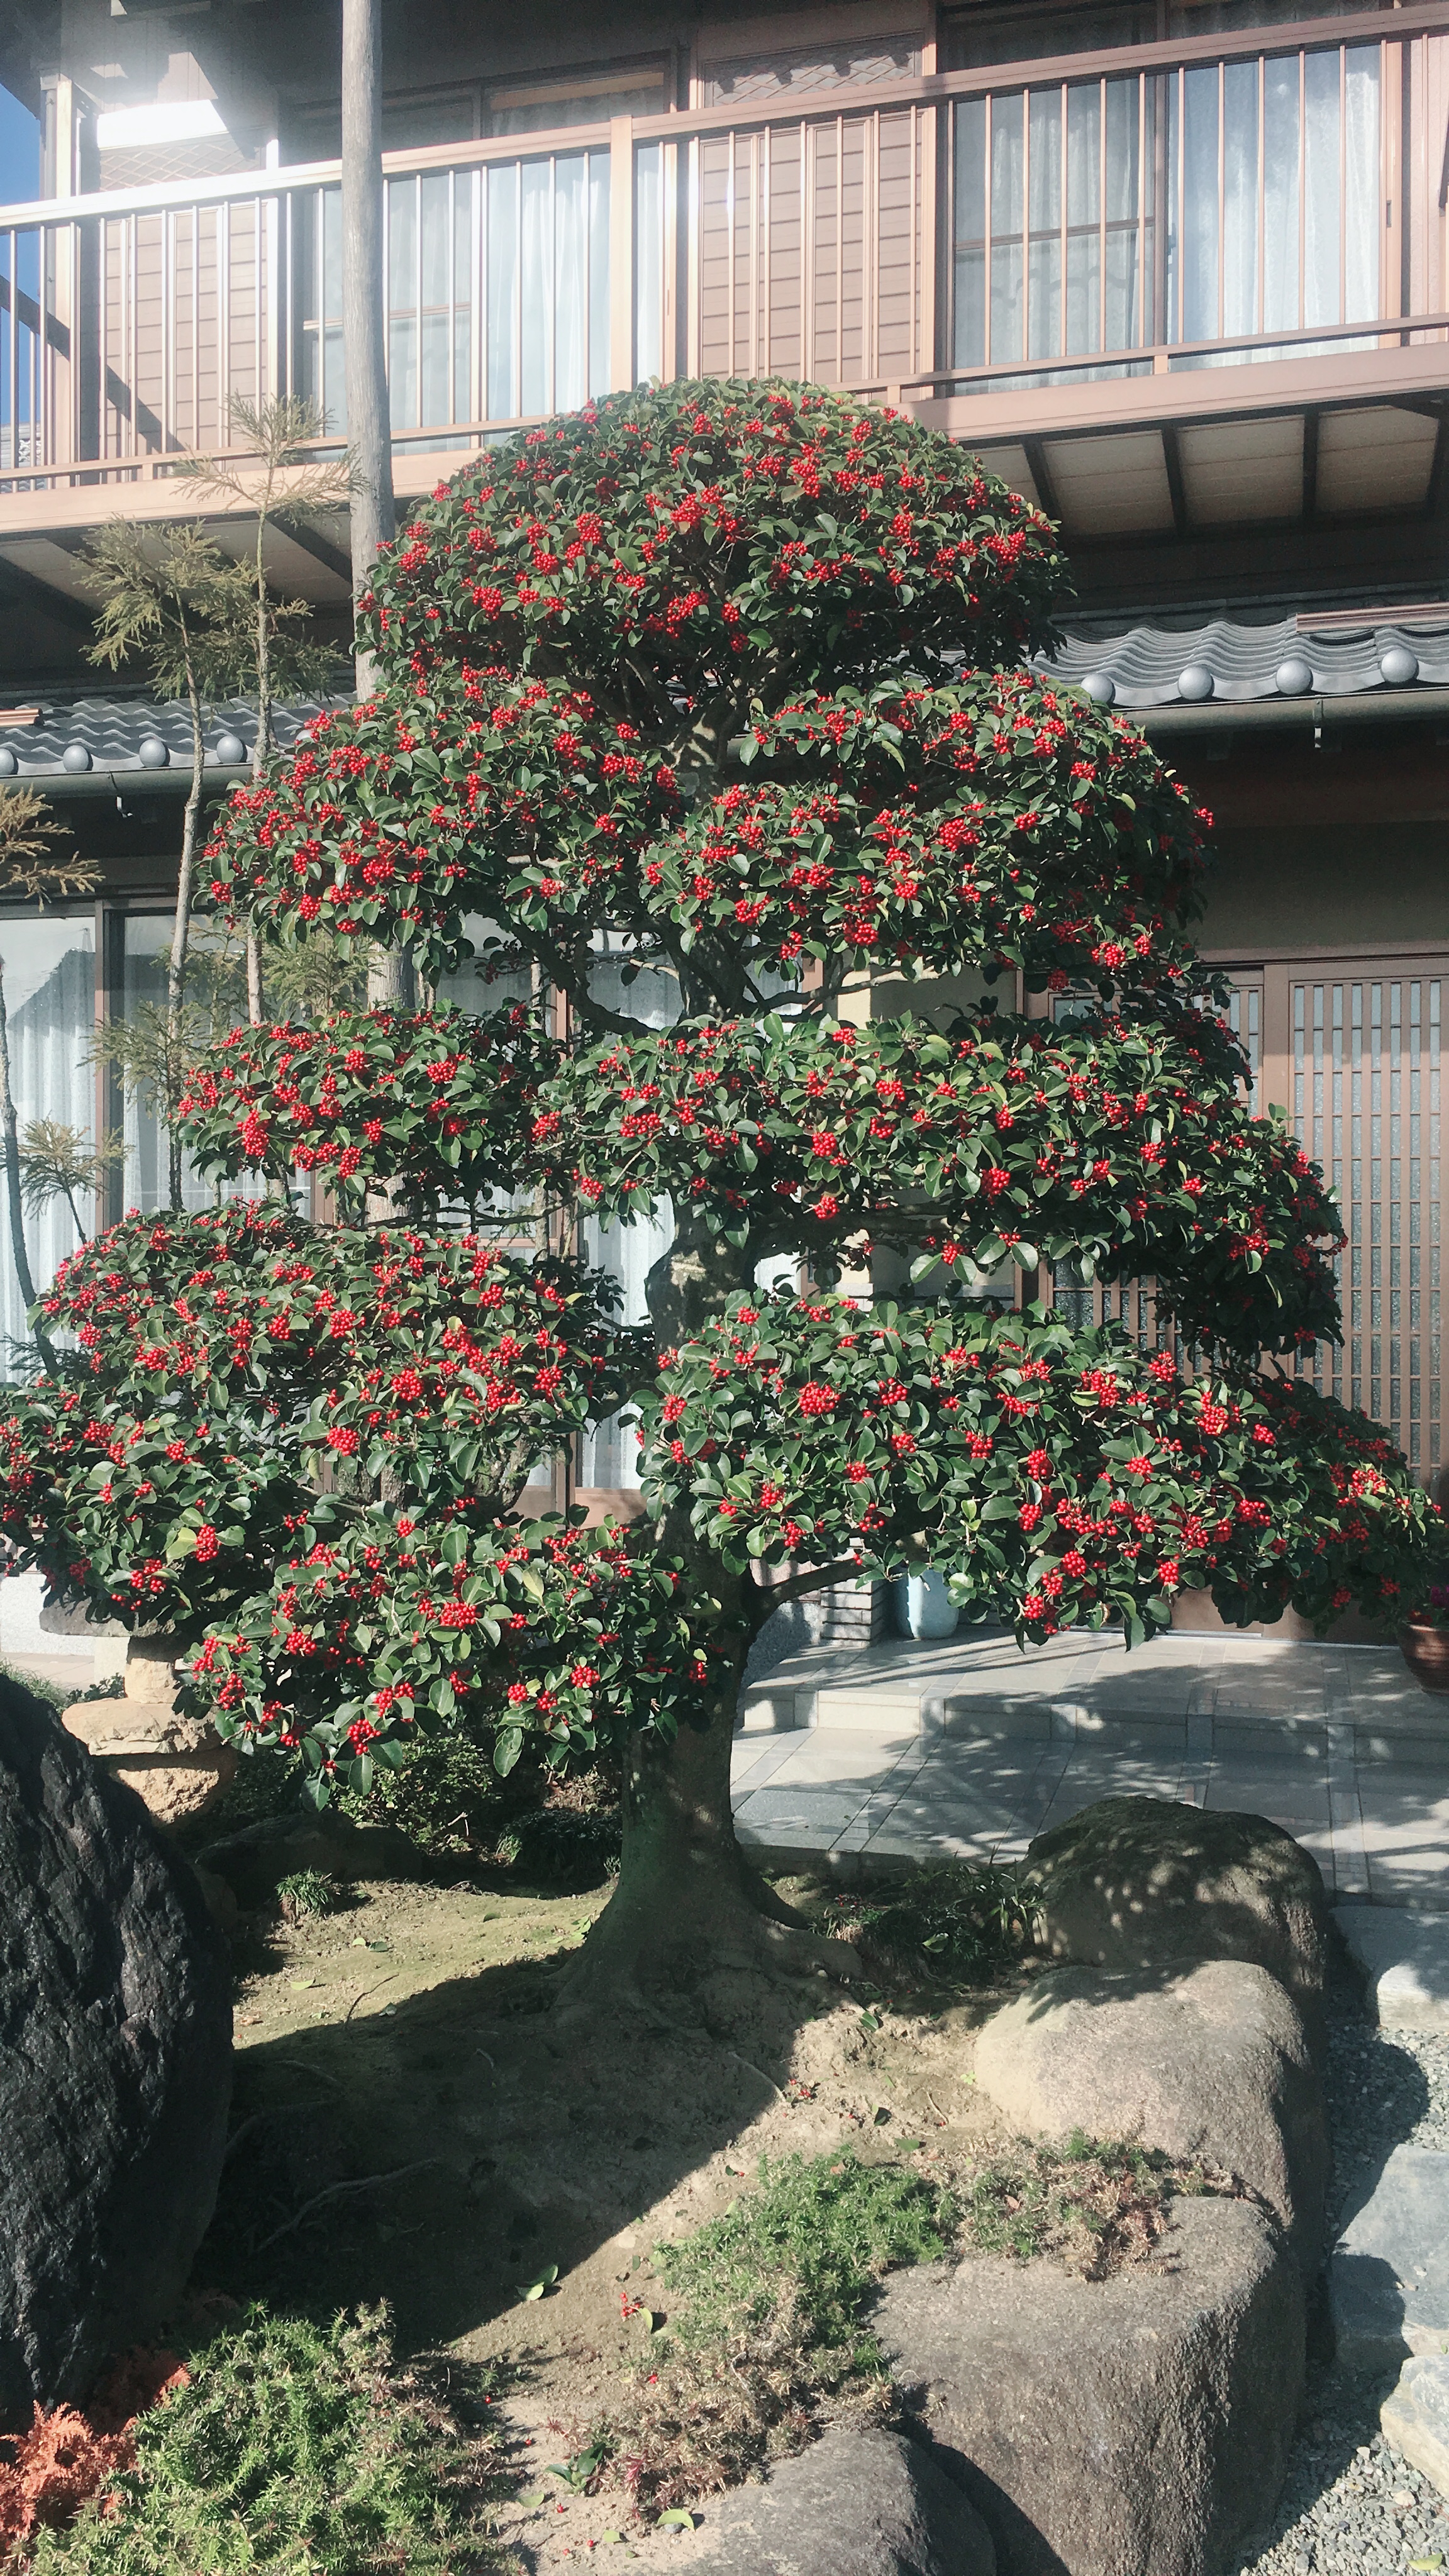 クロガネモチ 秀庭園は お客様のご希望をしっかりお聴きする 茨城県取手市の庭師 植木屋 です